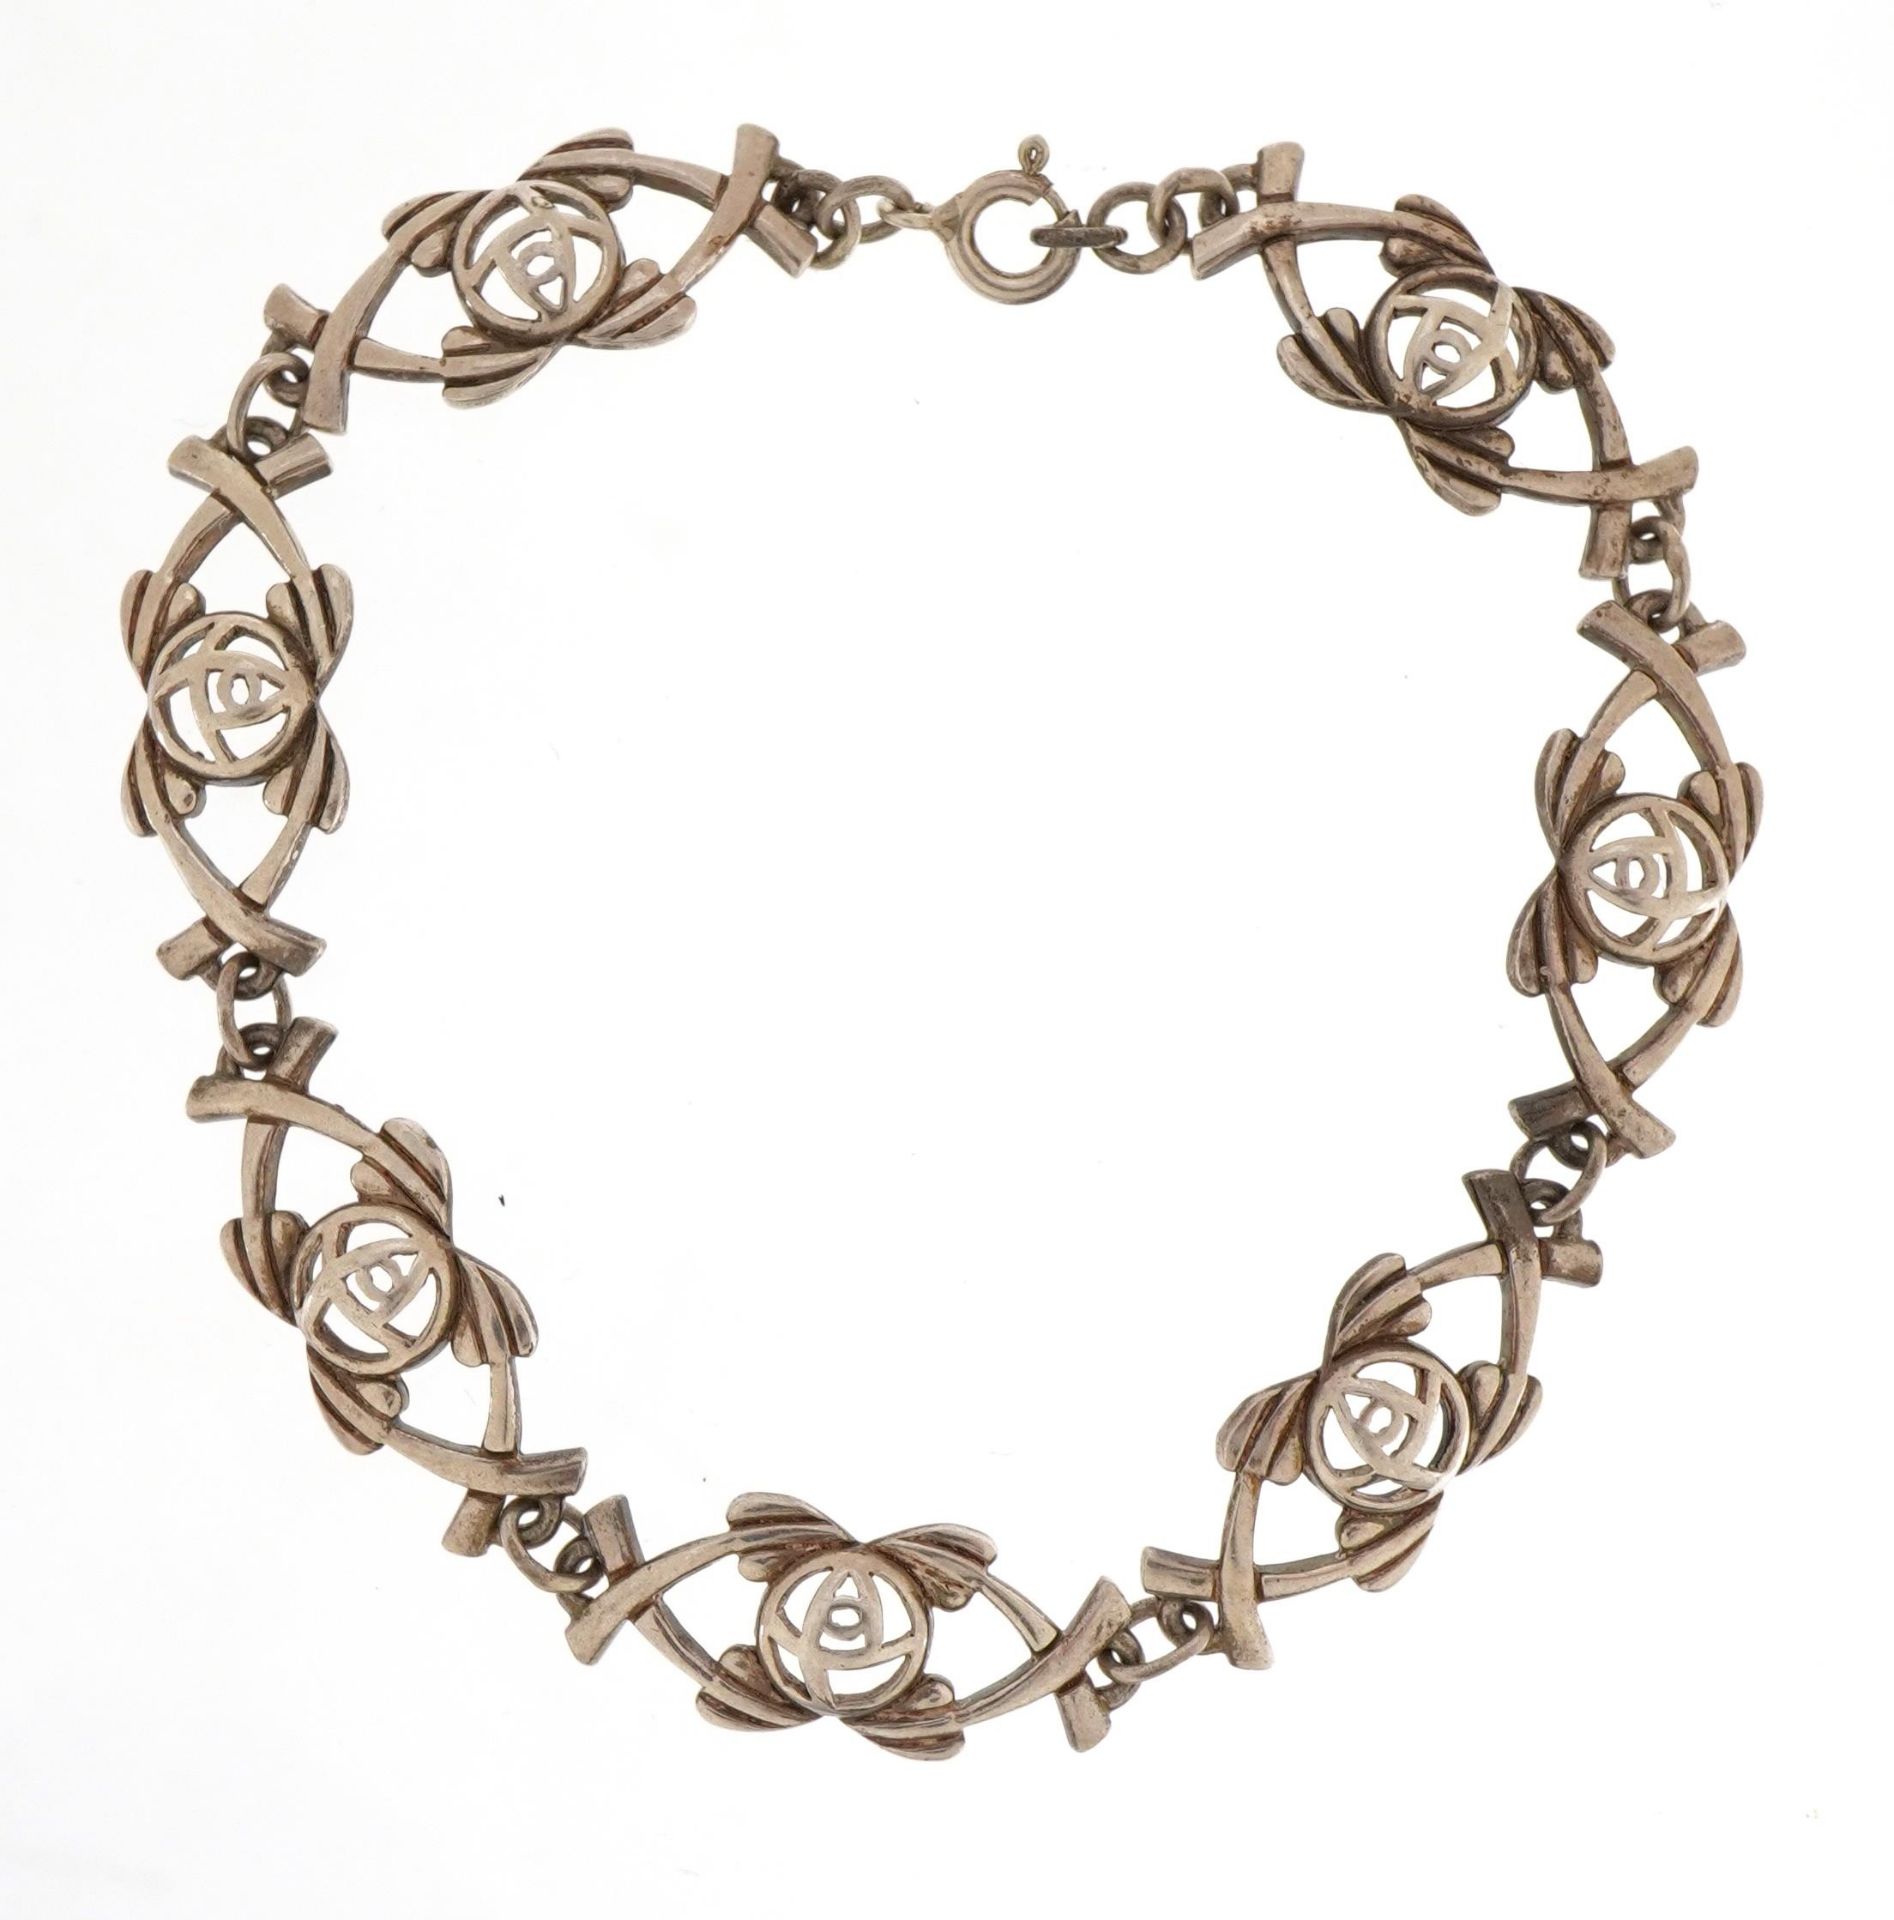 Stylish silver rose design bracelet stamped 925, 18cm in length, 12g - Image 2 of 3